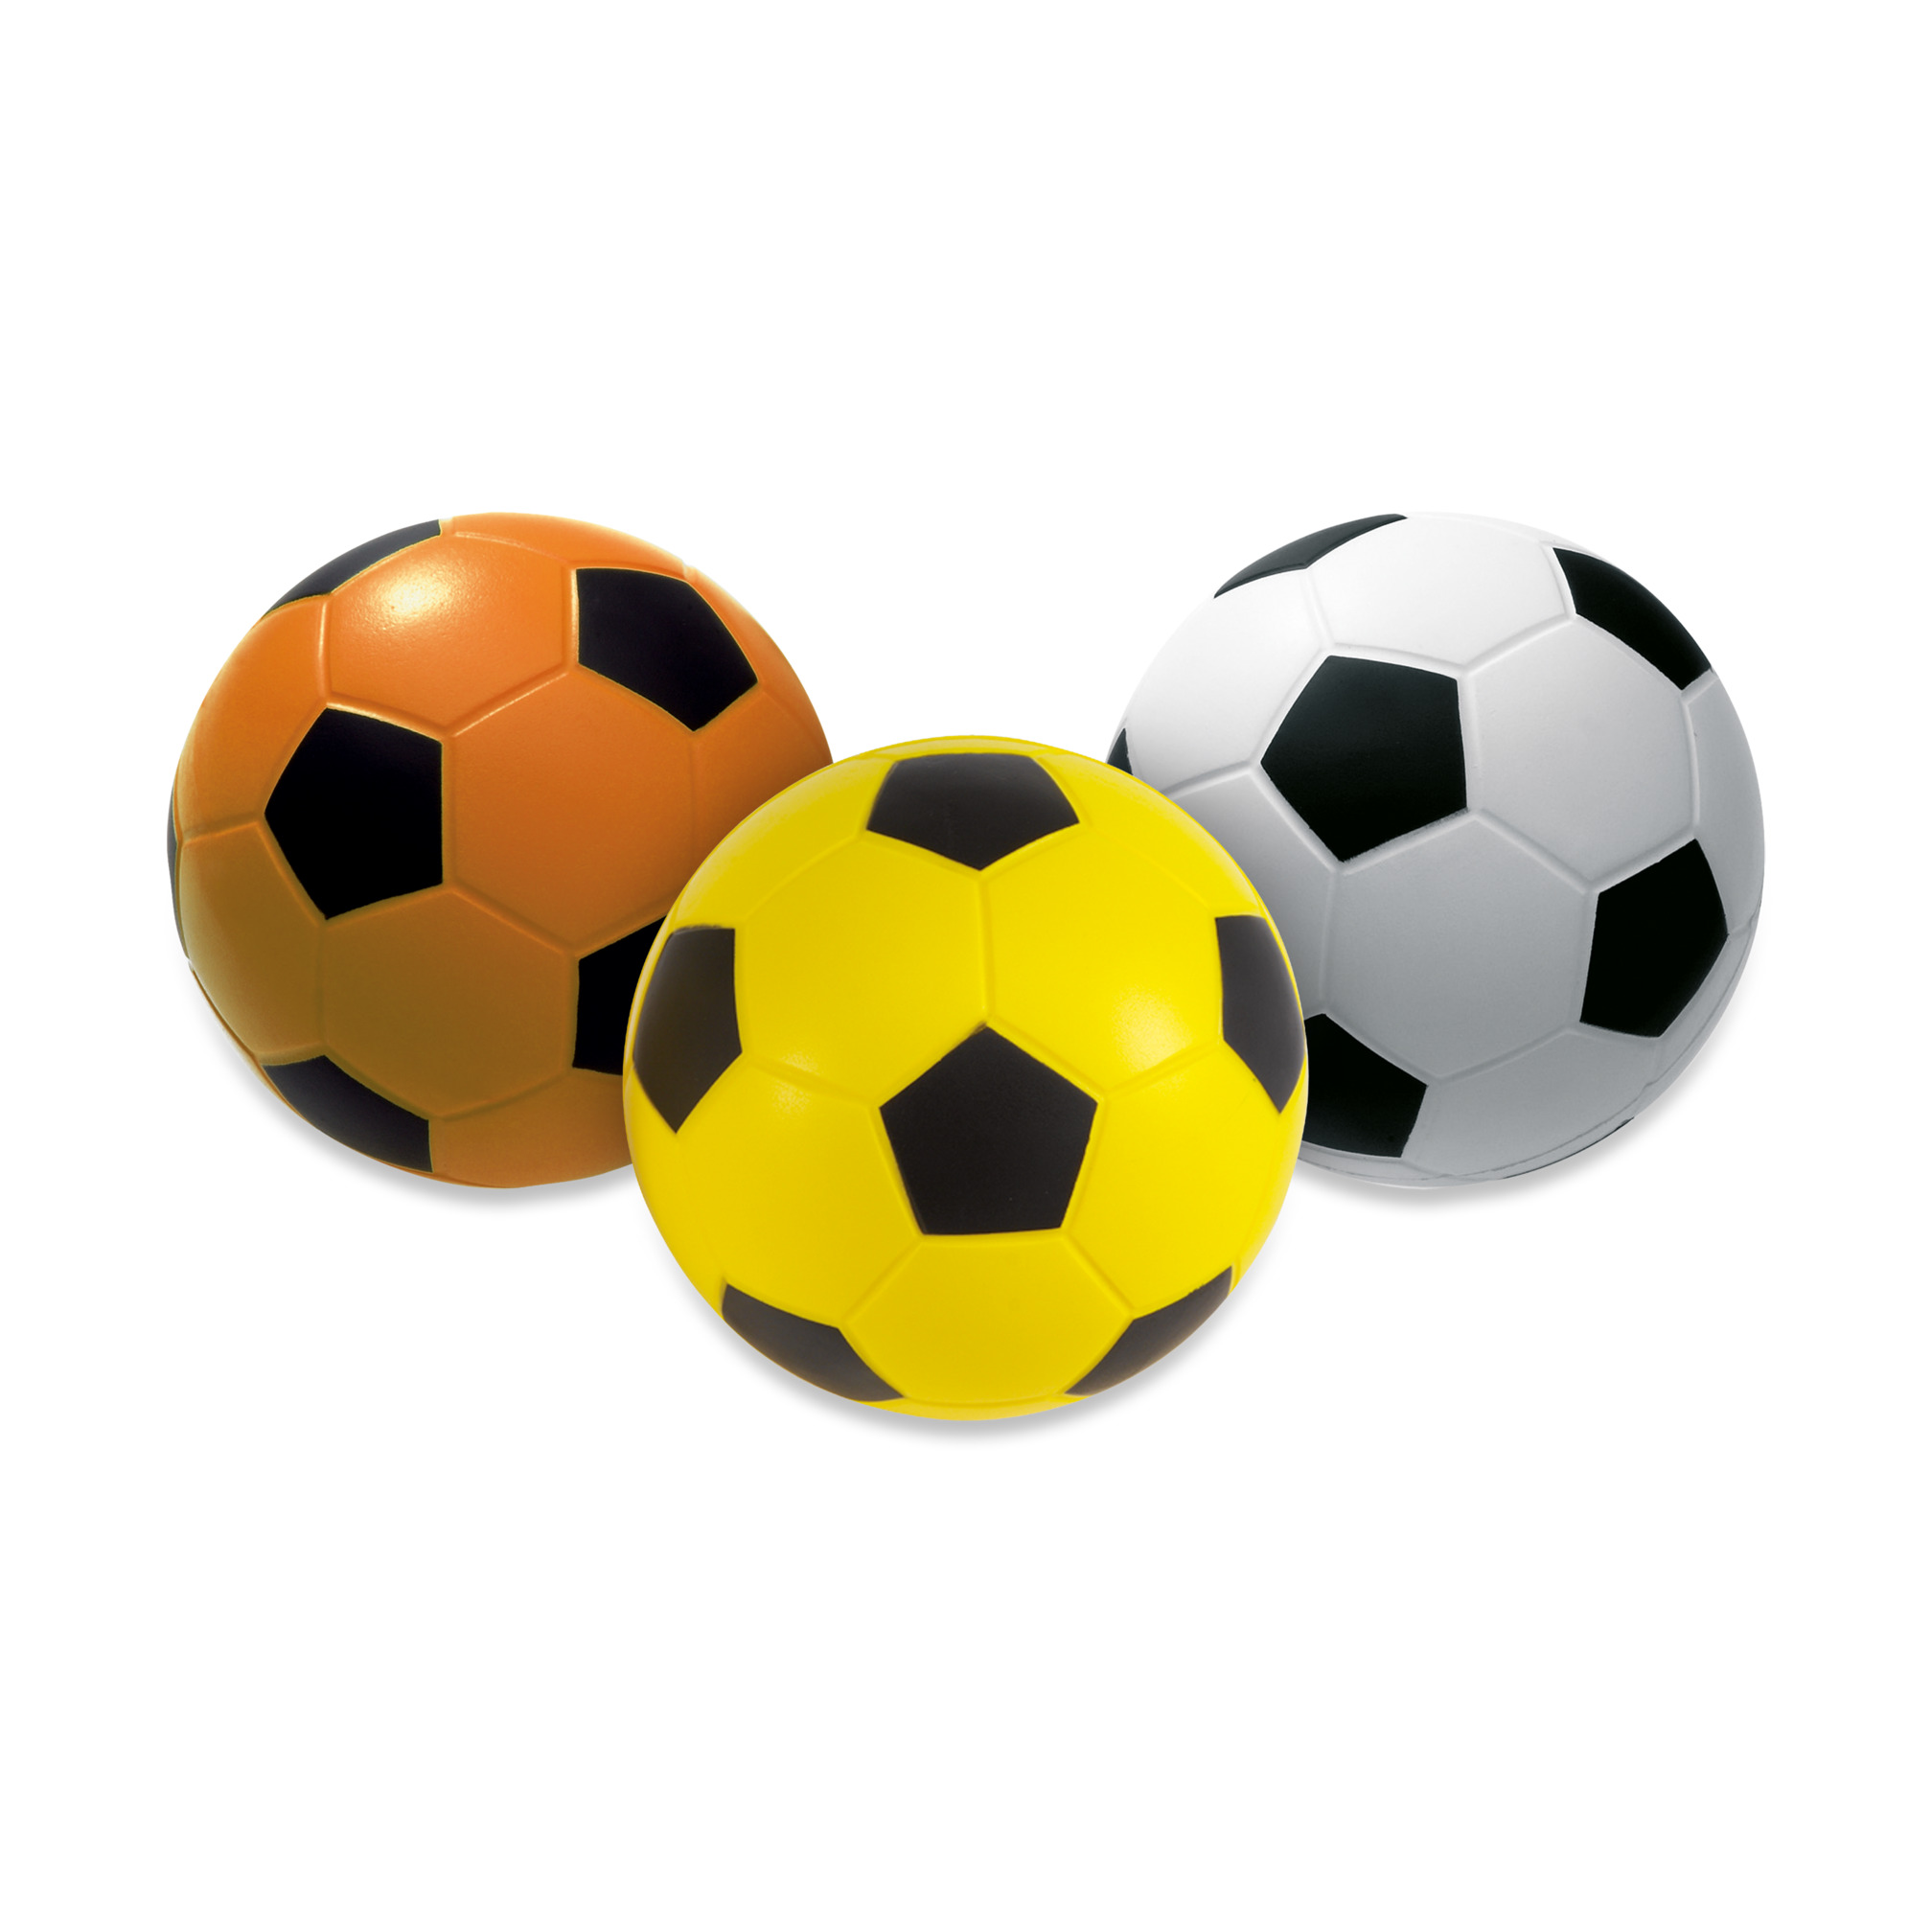 Ballon de foot en mousse avec revêtement, jaune/noir